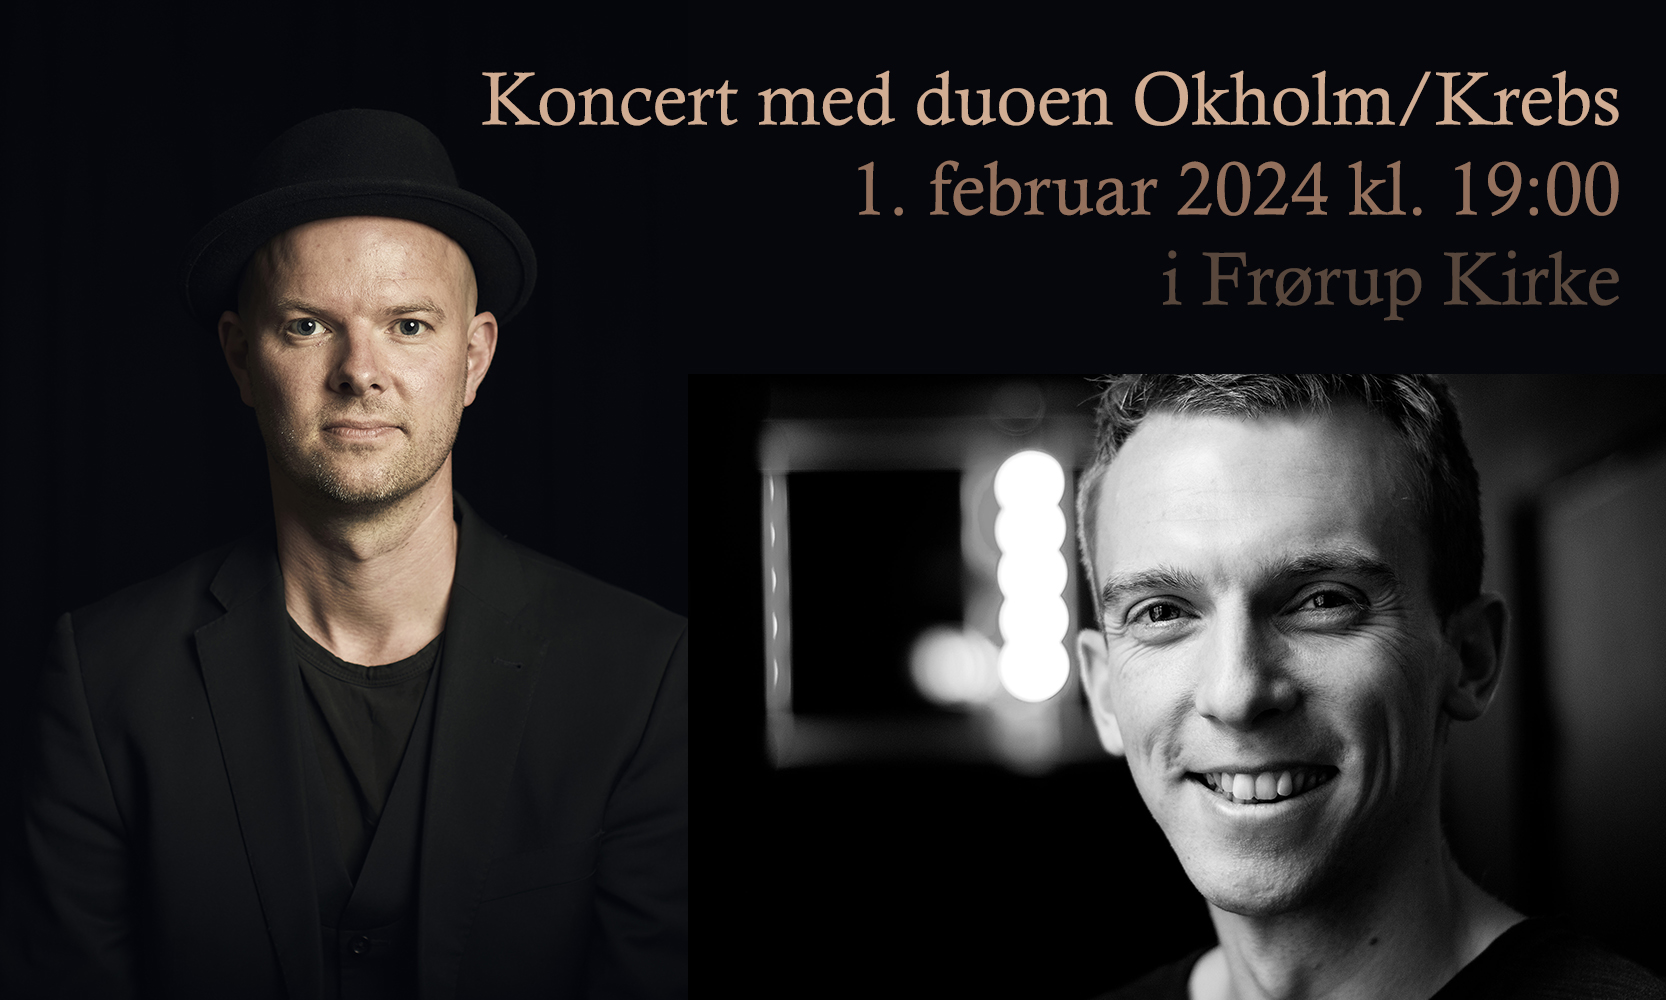 Kirkekoncert - Duo Okholm & Krebs